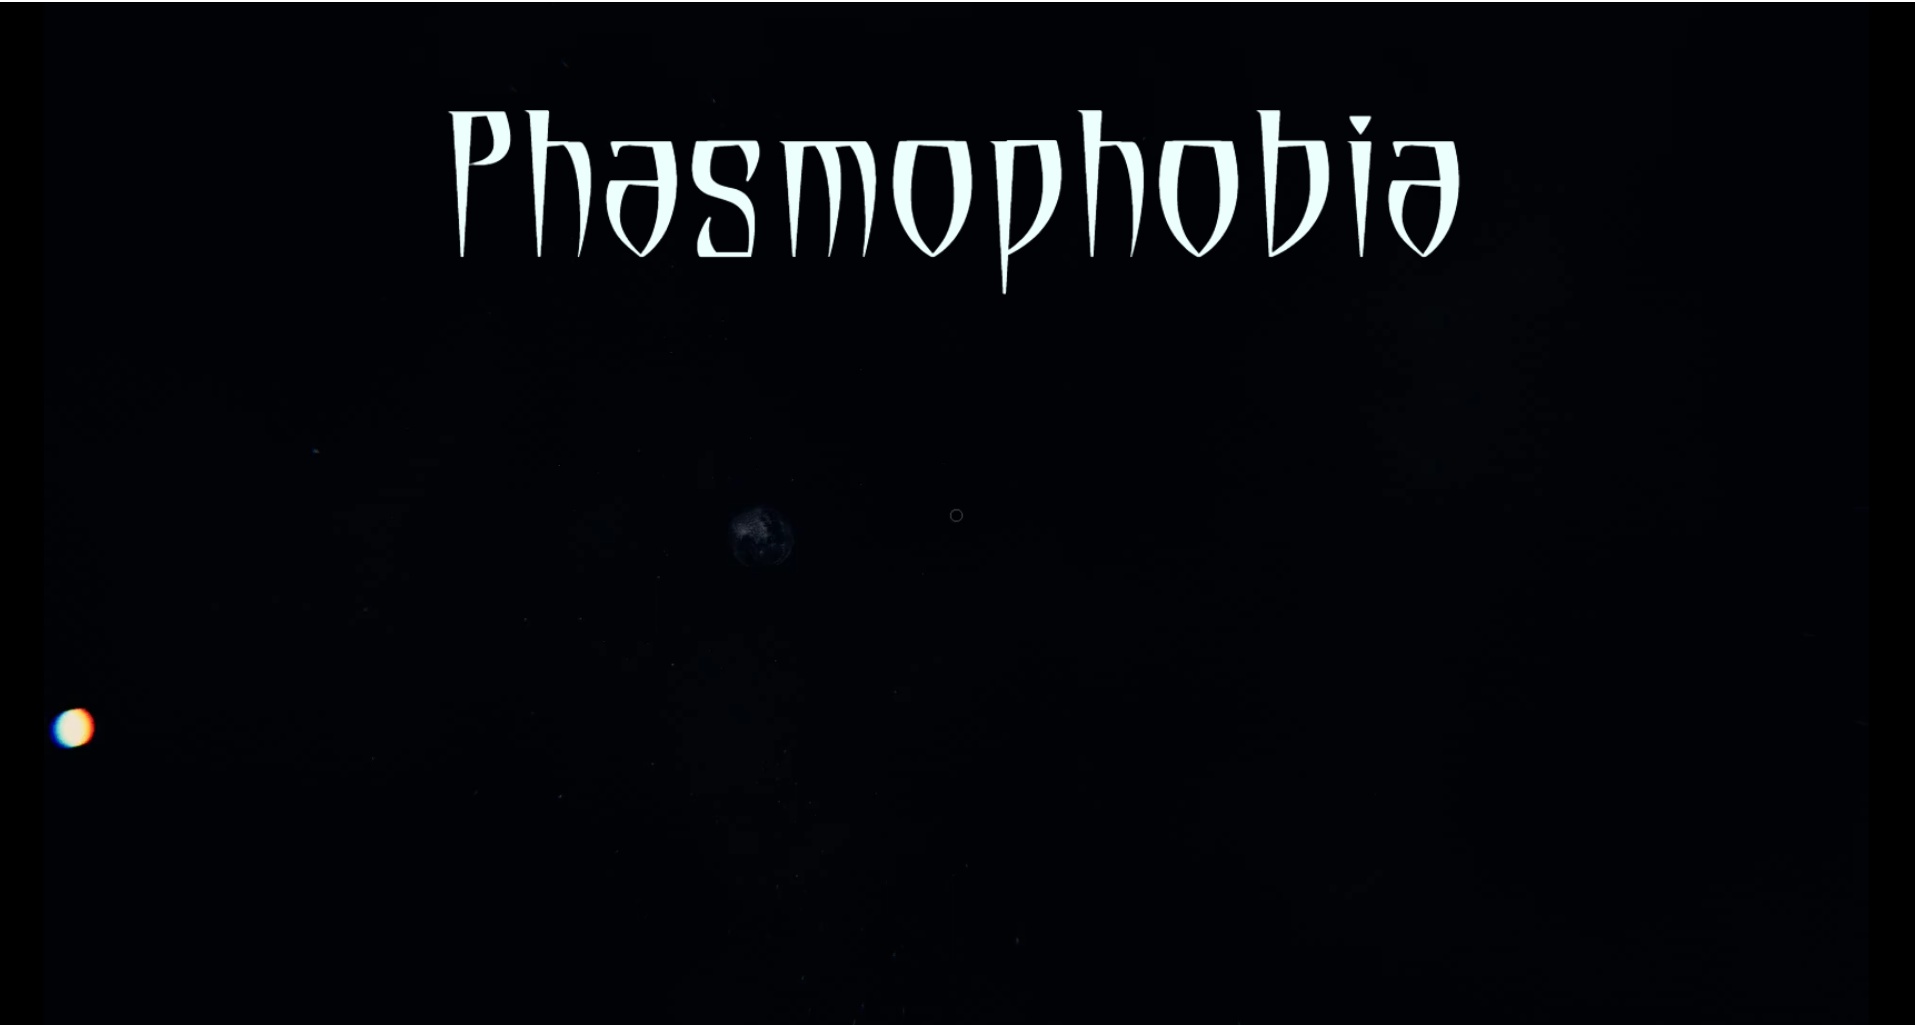 все голосовые команды phasmophobia фото 113